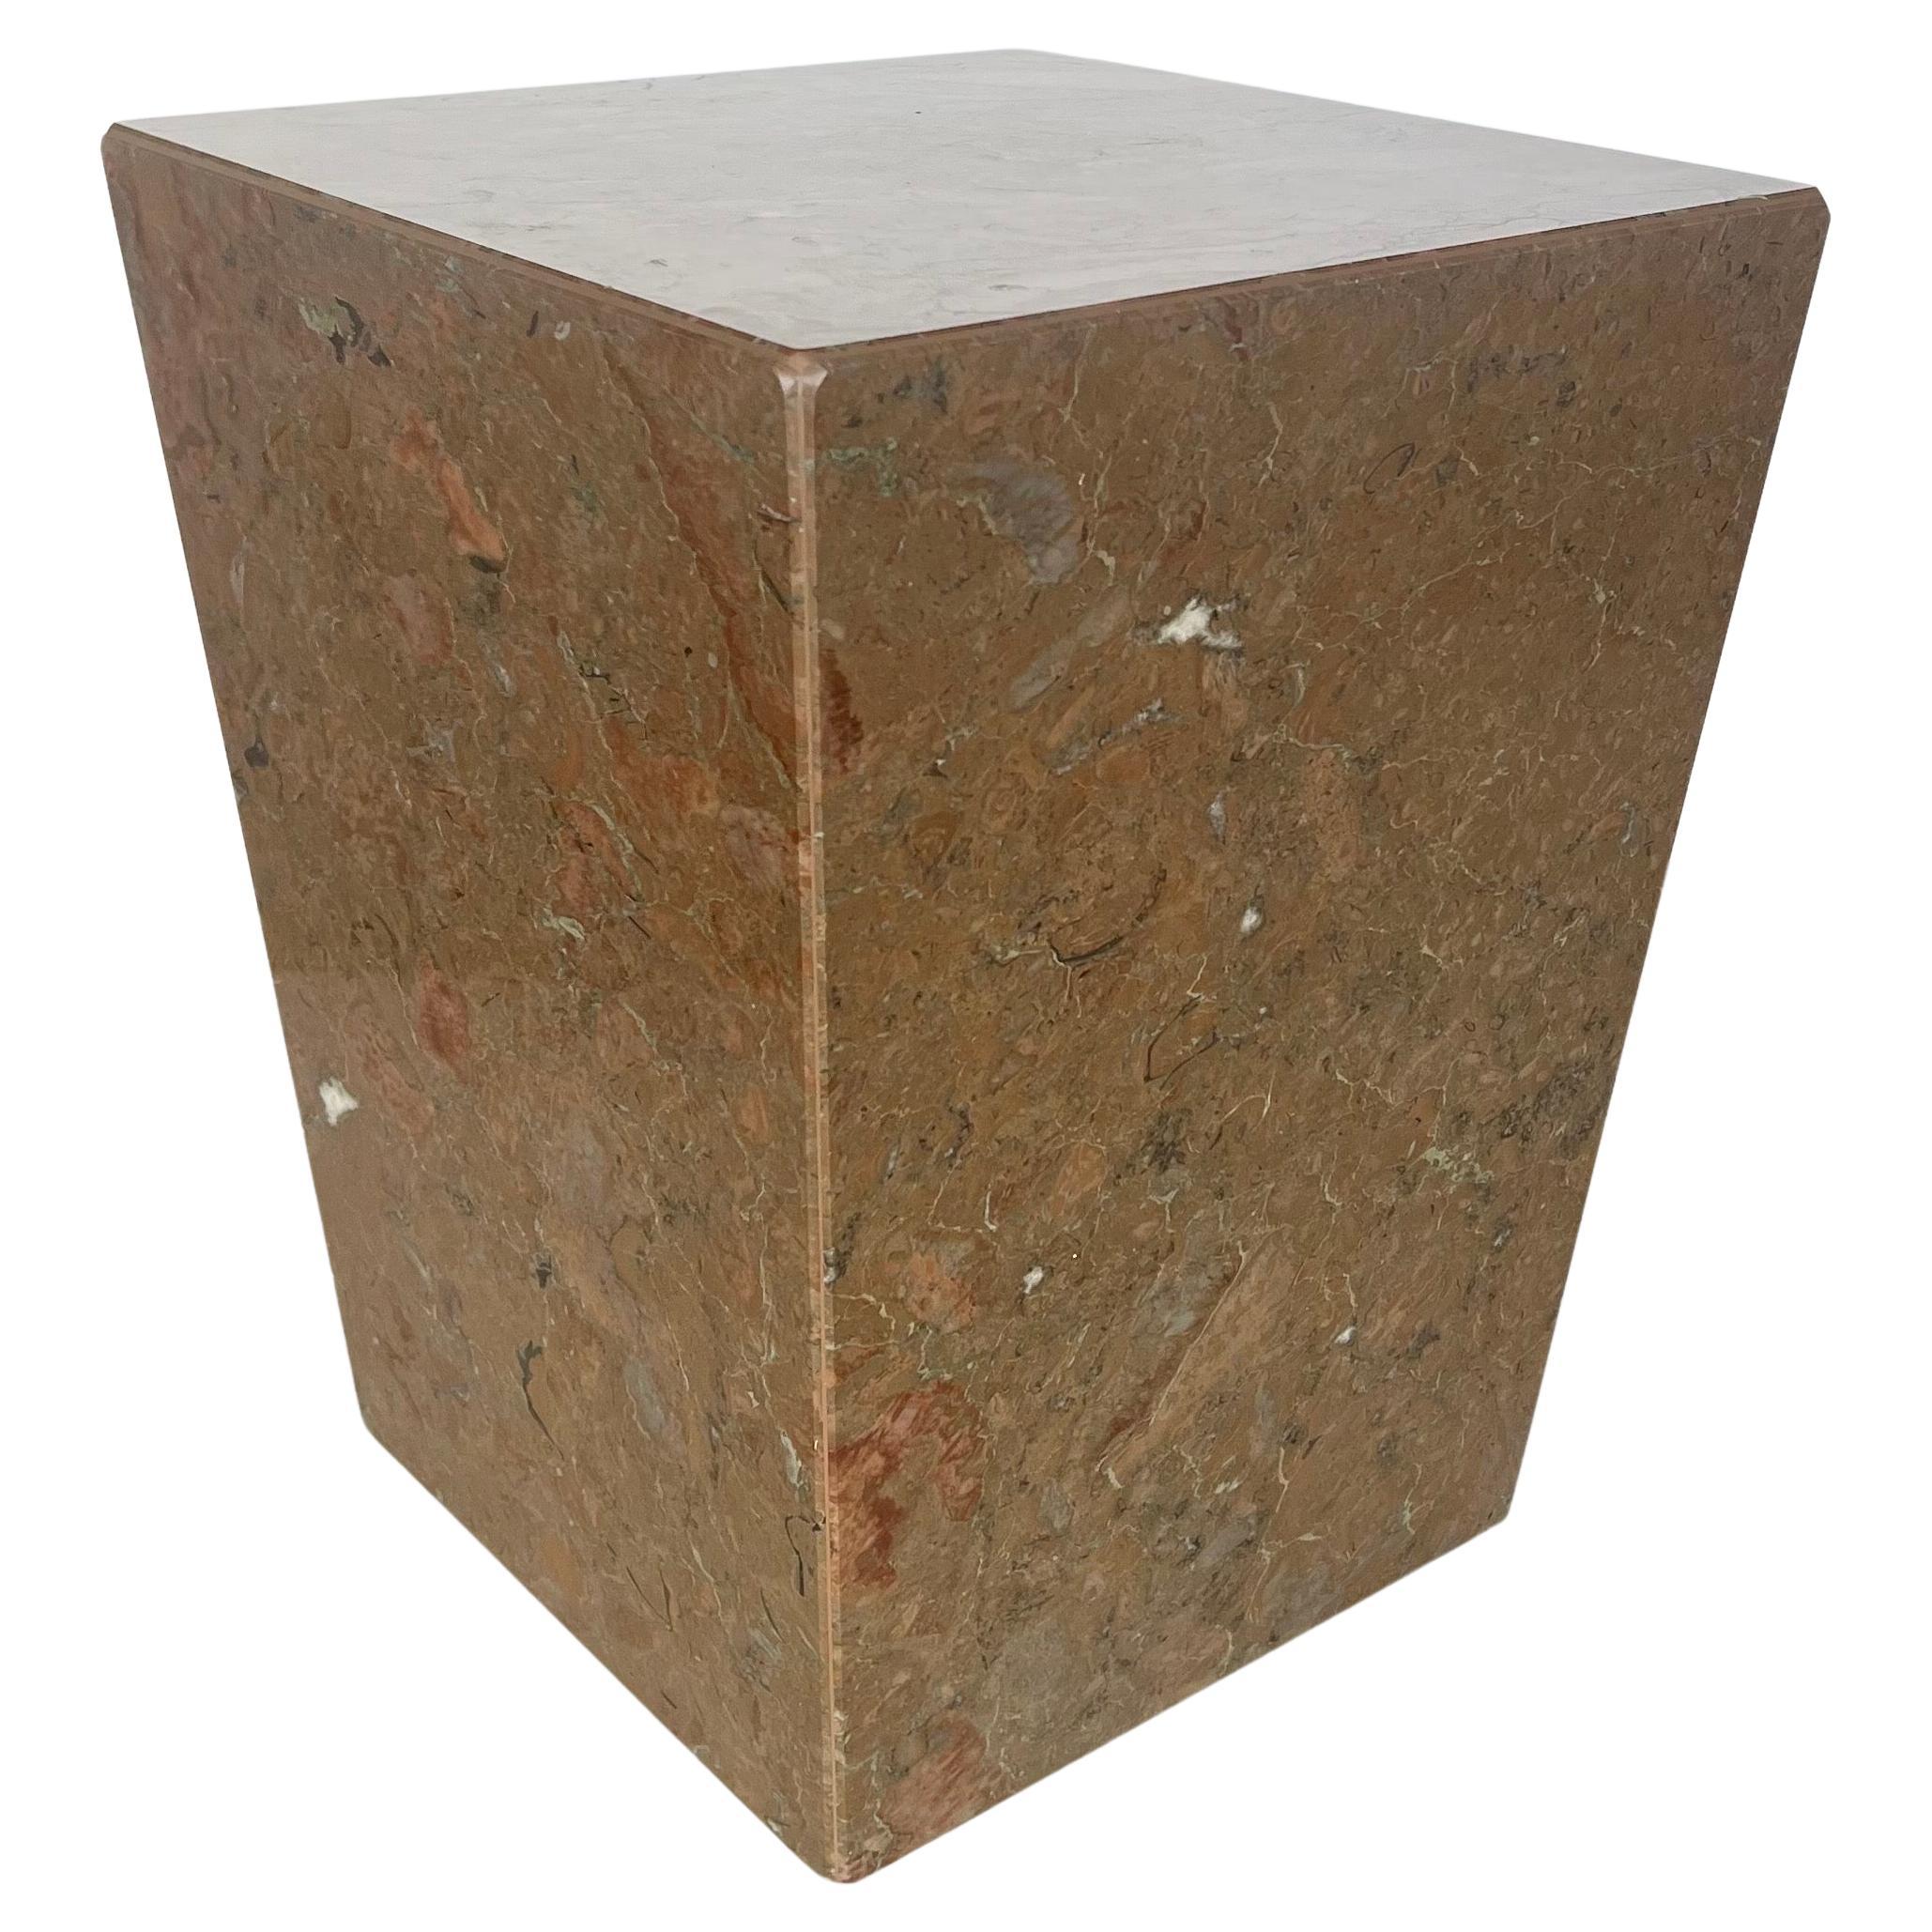 Postmodern Italian Marble Low Pedestal / End Table